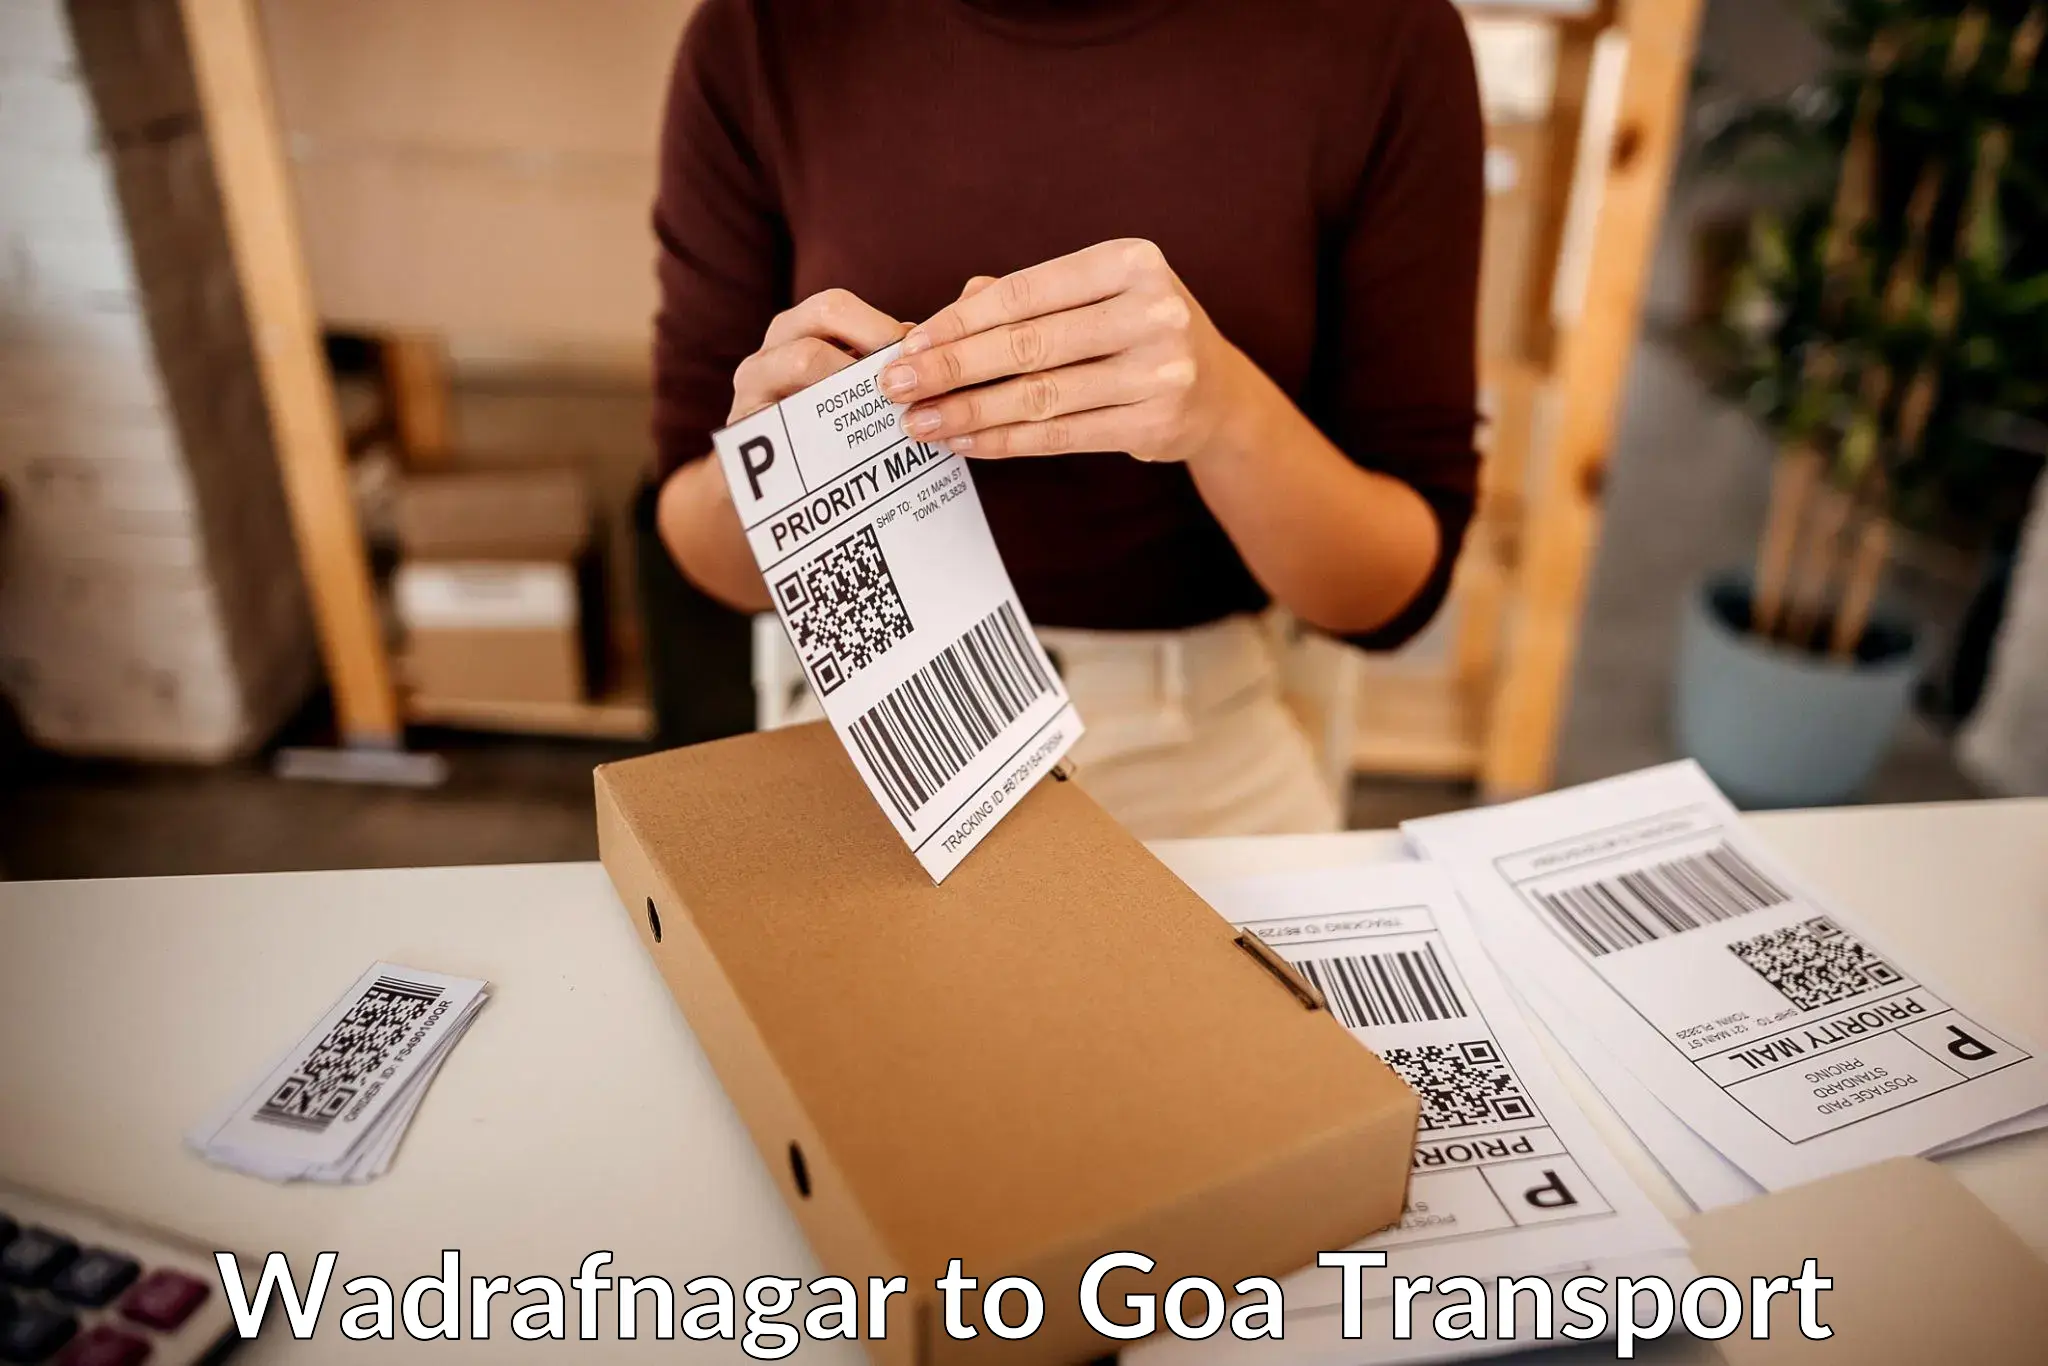 Commercial transport service Wadrafnagar to NIT Goa